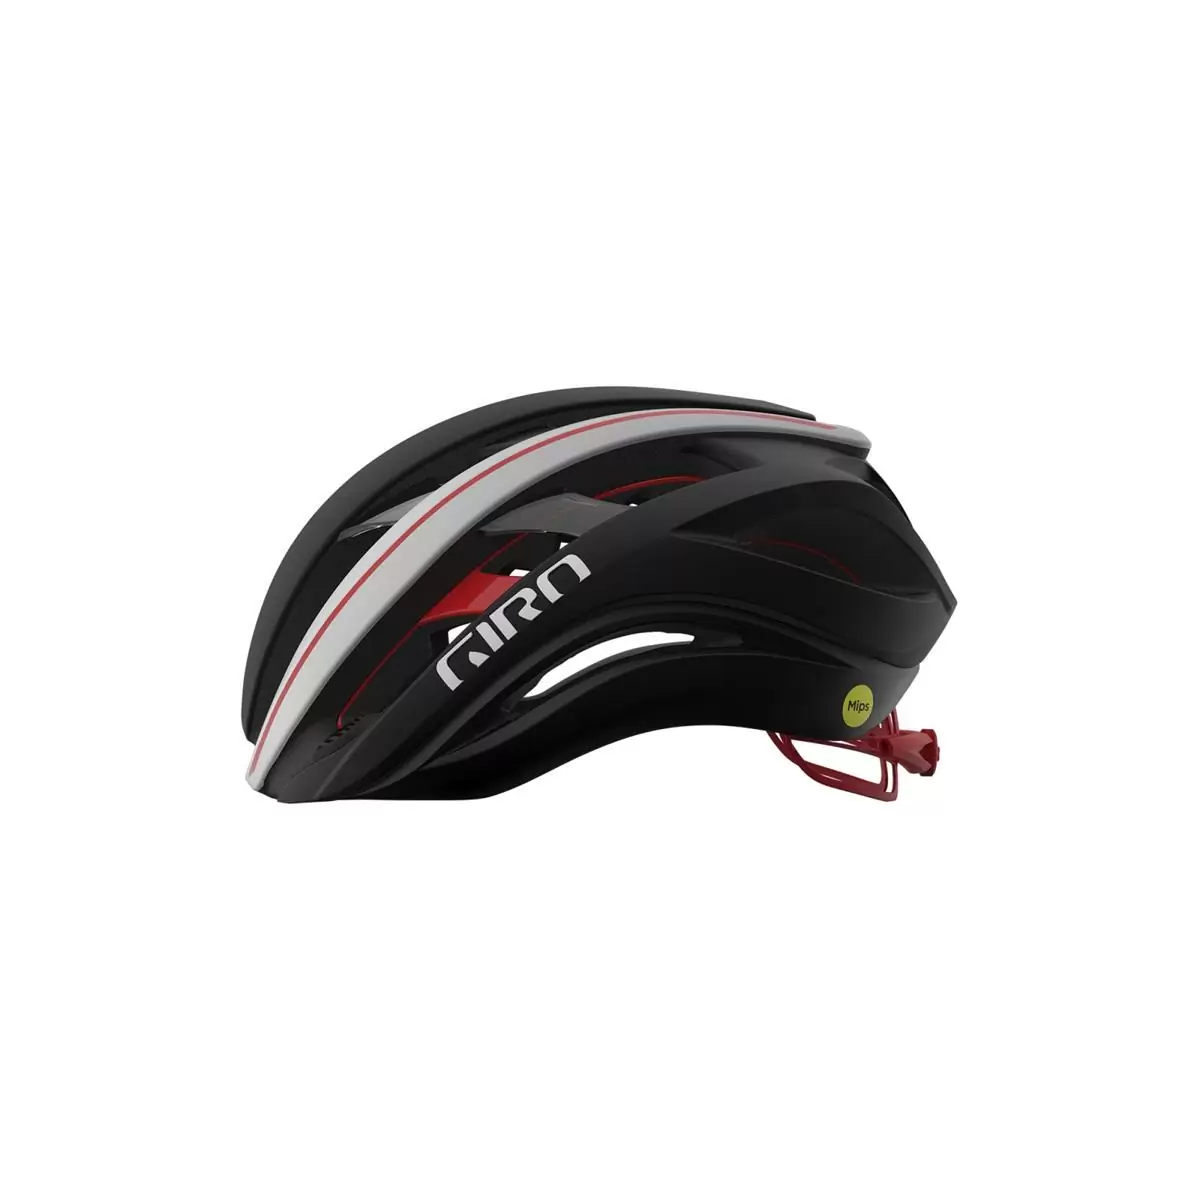 Helmet Aether Spherical MIPS Black/Red Size M (55-59cm) #1